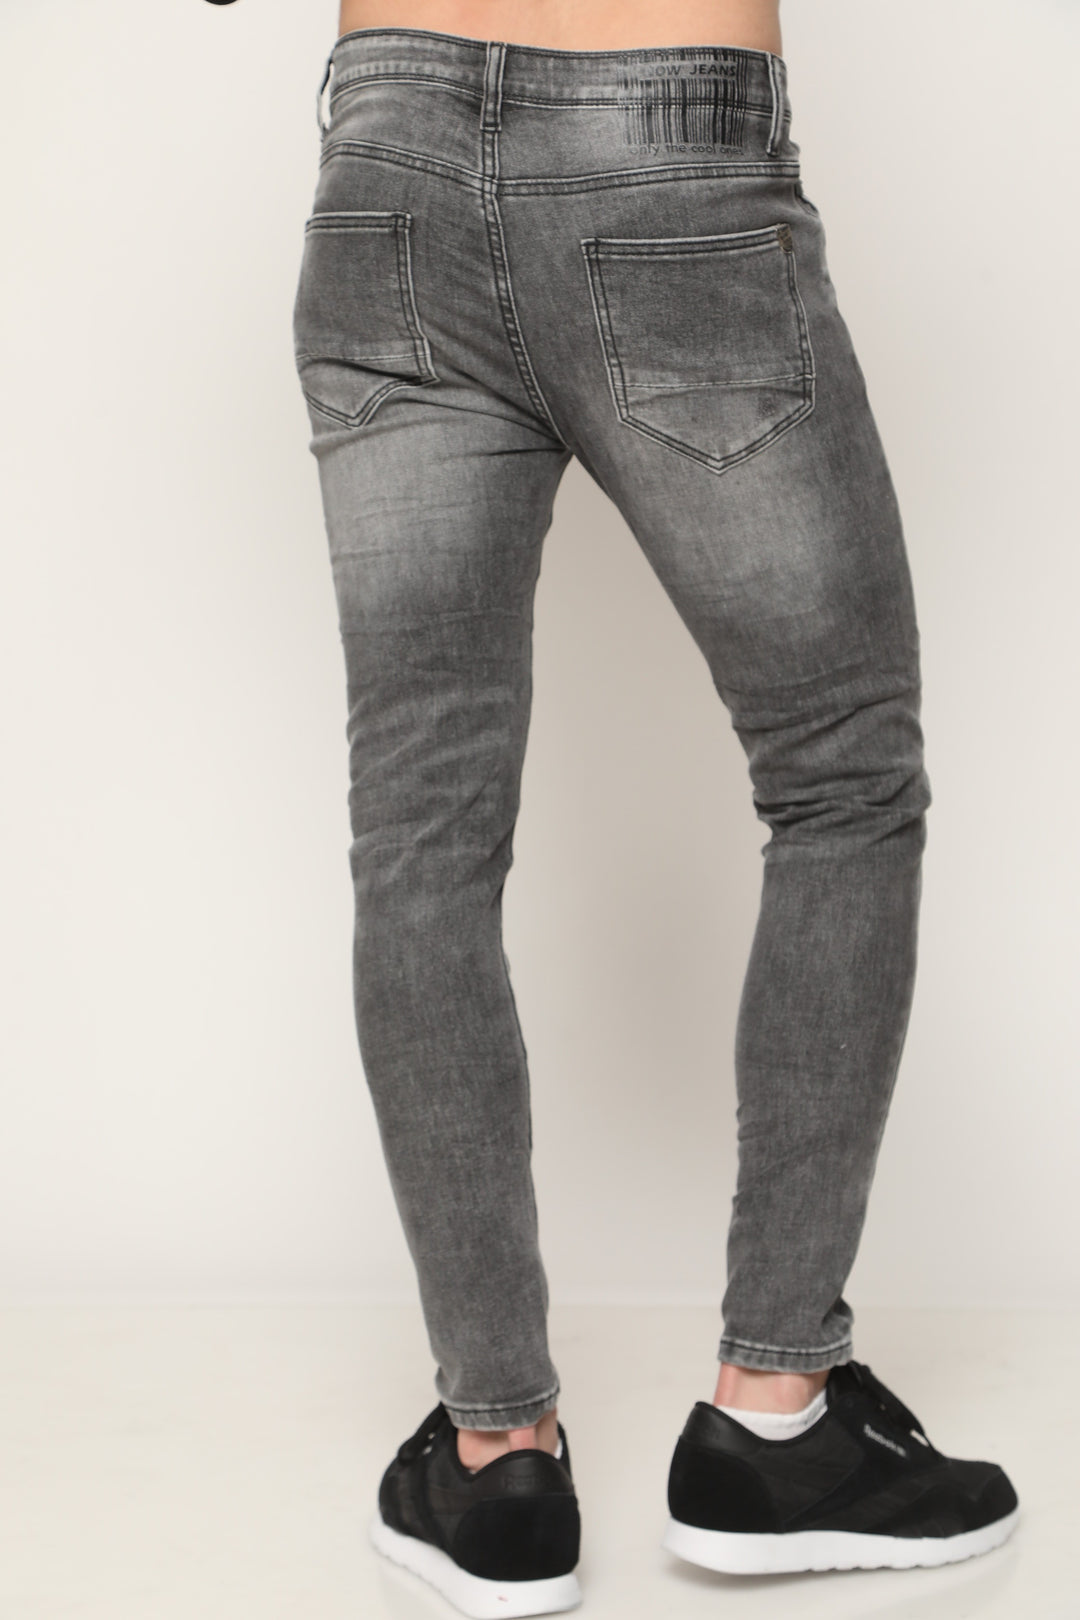 ג'ינס סופר סקיני 705 - canavaro jeans